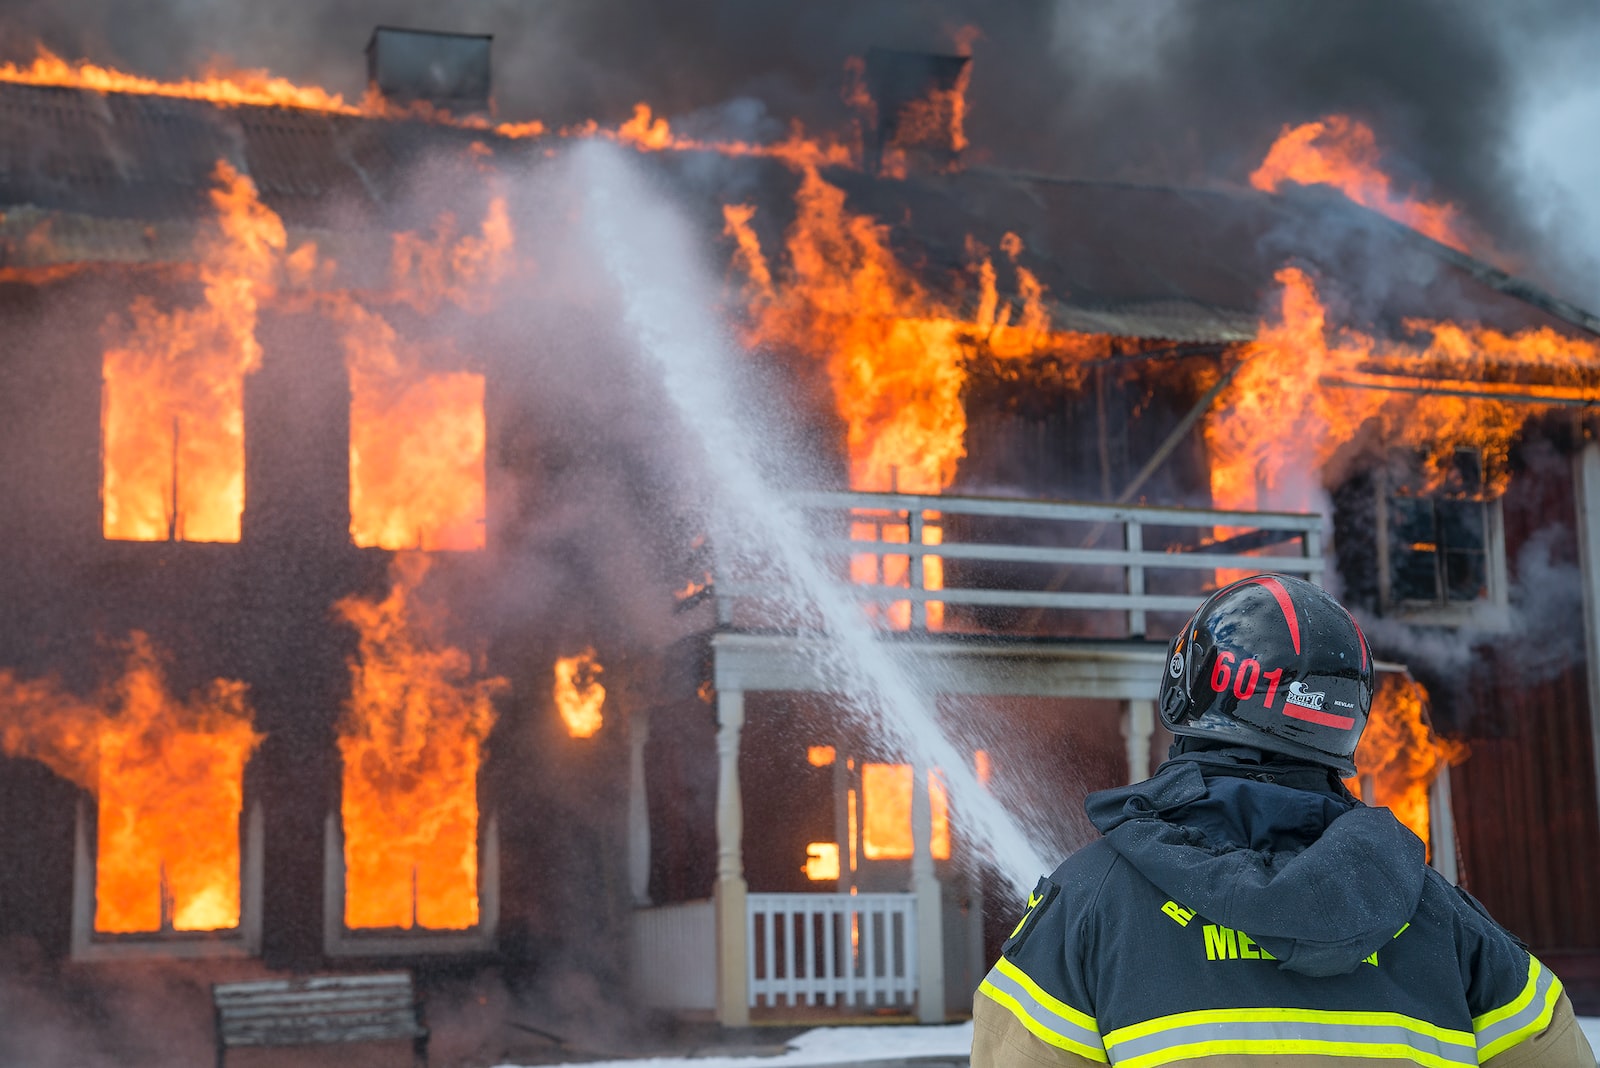 Contre-expertise en cas d’incendie : faites appel à un contre-expert